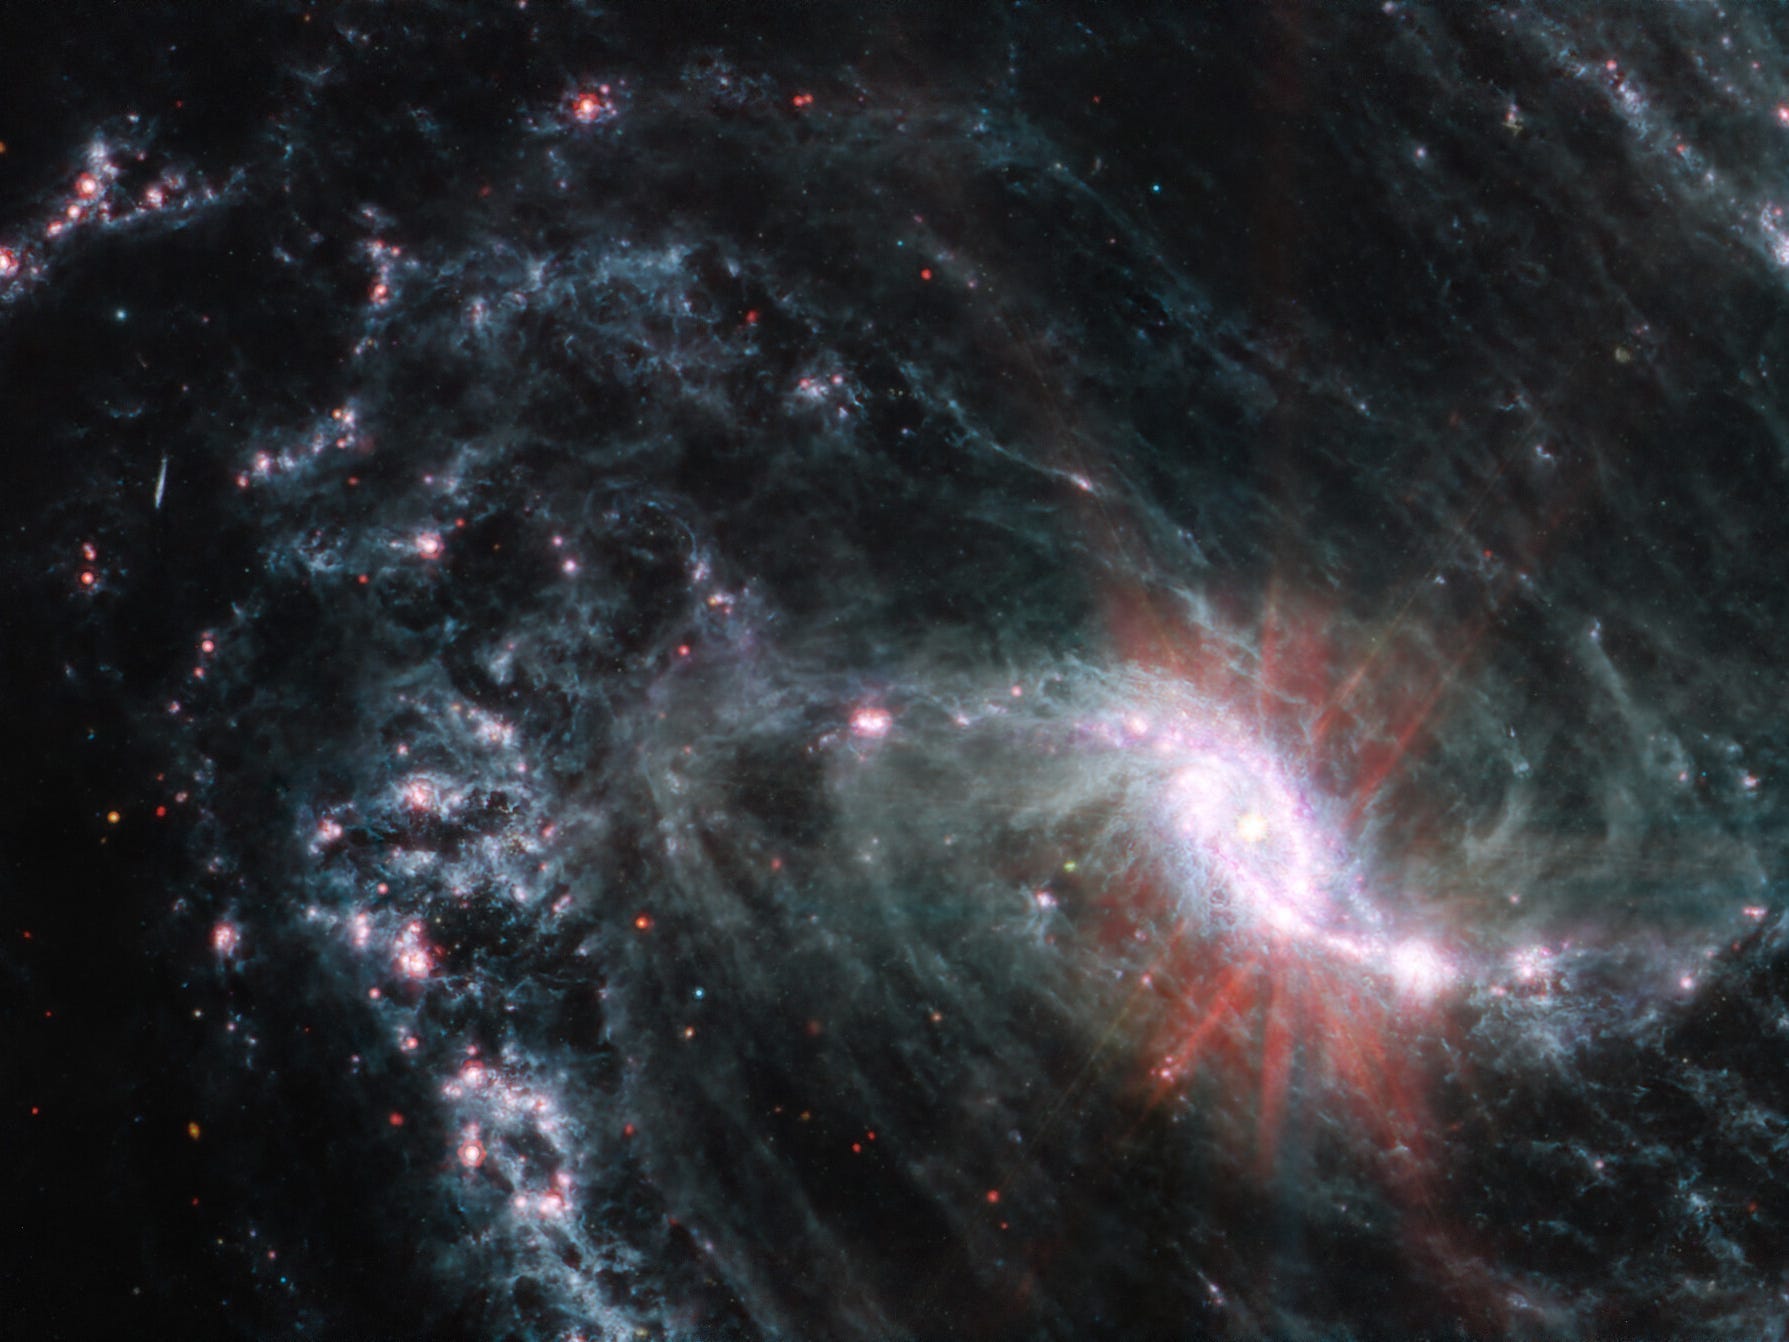 Nahaufnahme einer feinen Spiralgalaxie auf schwarzem Hintergrund.  Es verfügt über einen leuchtenden, hellrosa Kern in einer länglichen ovalen Form.  Rote Streifen scheinen aus dem Kern auszustrahlen.  Der untere rechte Teil der Arme der Galaxie ragt aus dem Rahmen heraus.  Auf dem gesamten Bild stellen vereinzelte kleine rote Punkte Hintergrundgalaxien dar.